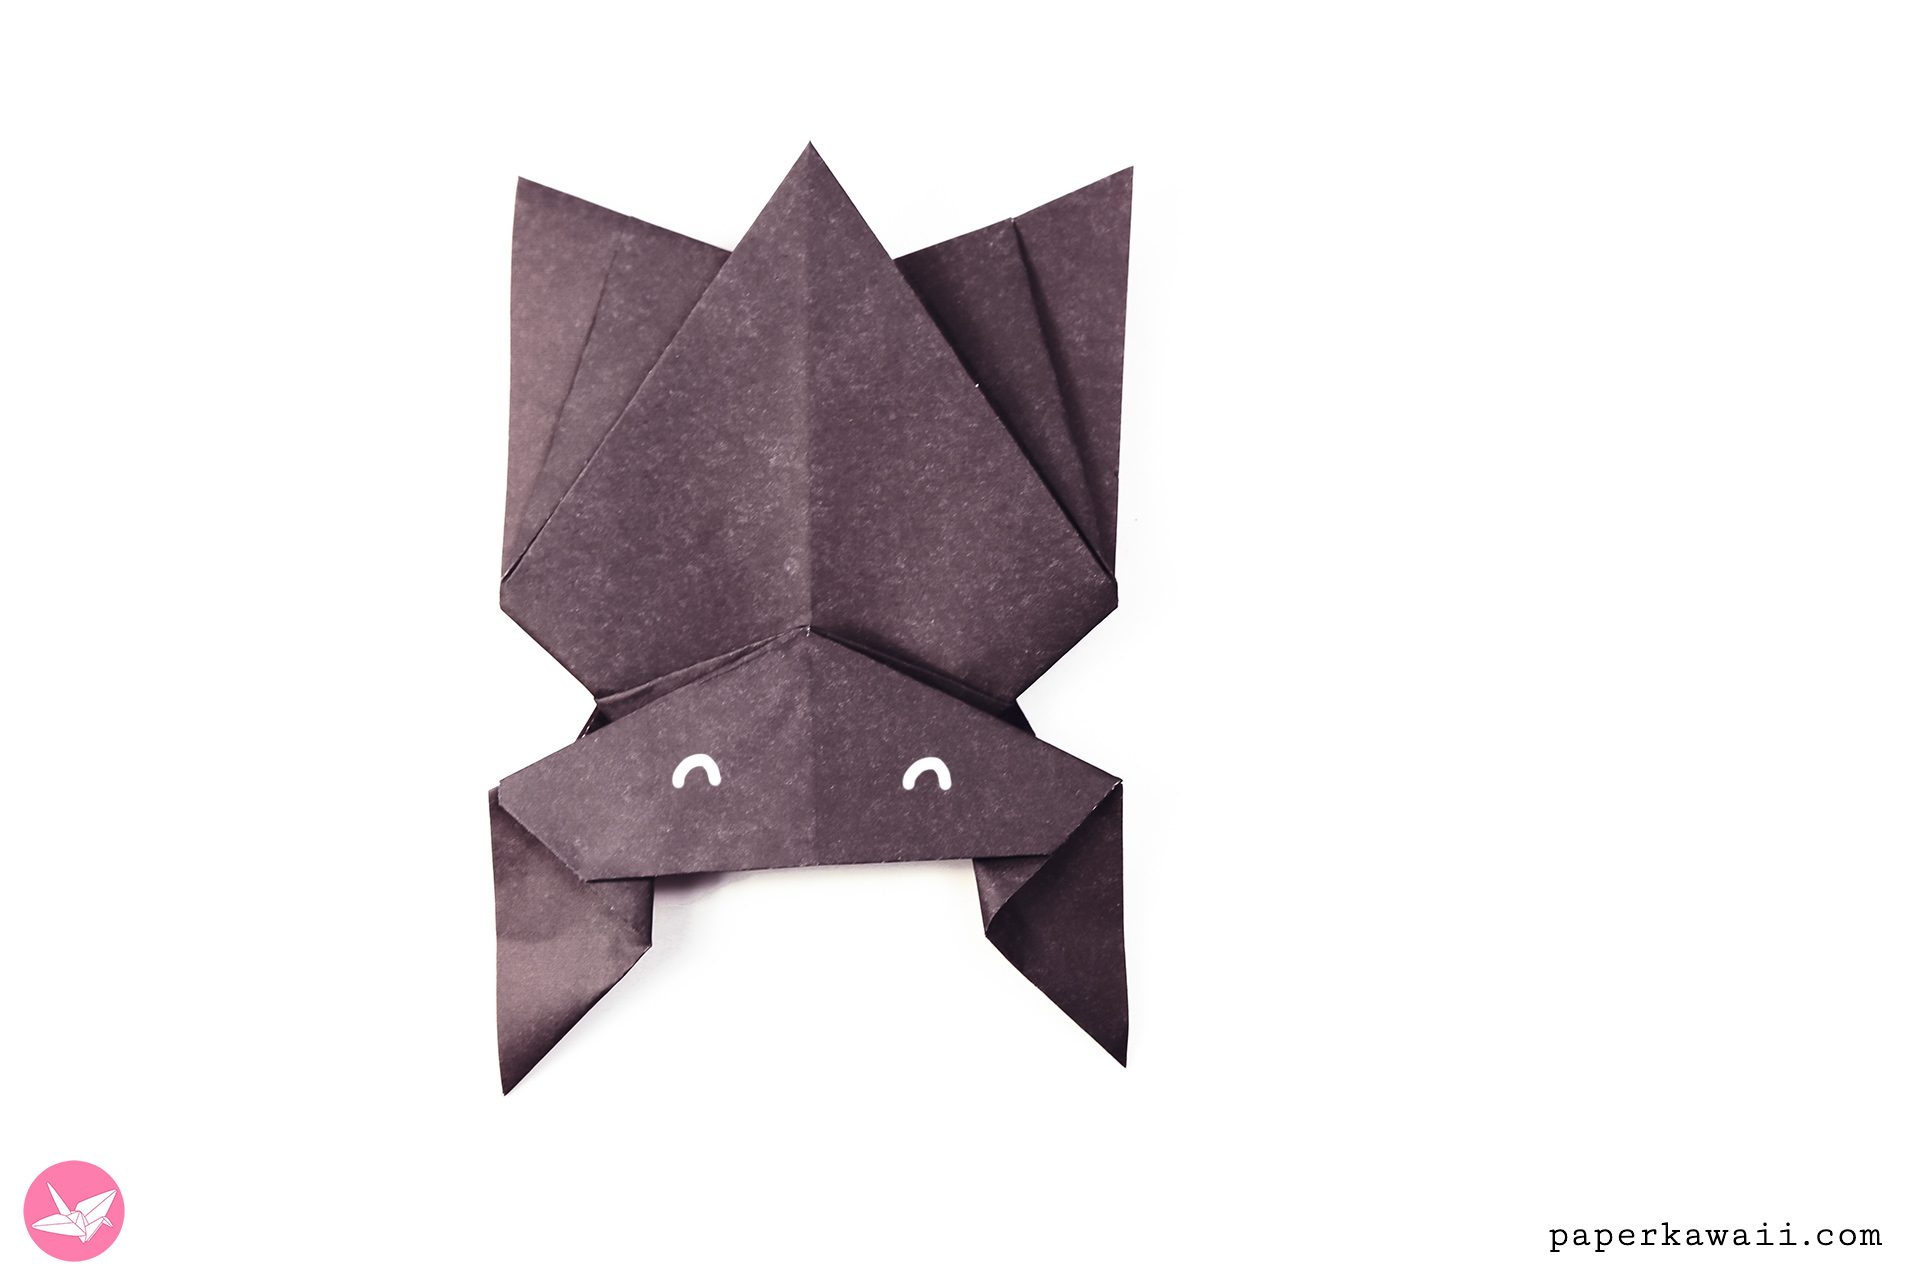 Origami Hanging Bat Tutorial Paper Kawaii 02